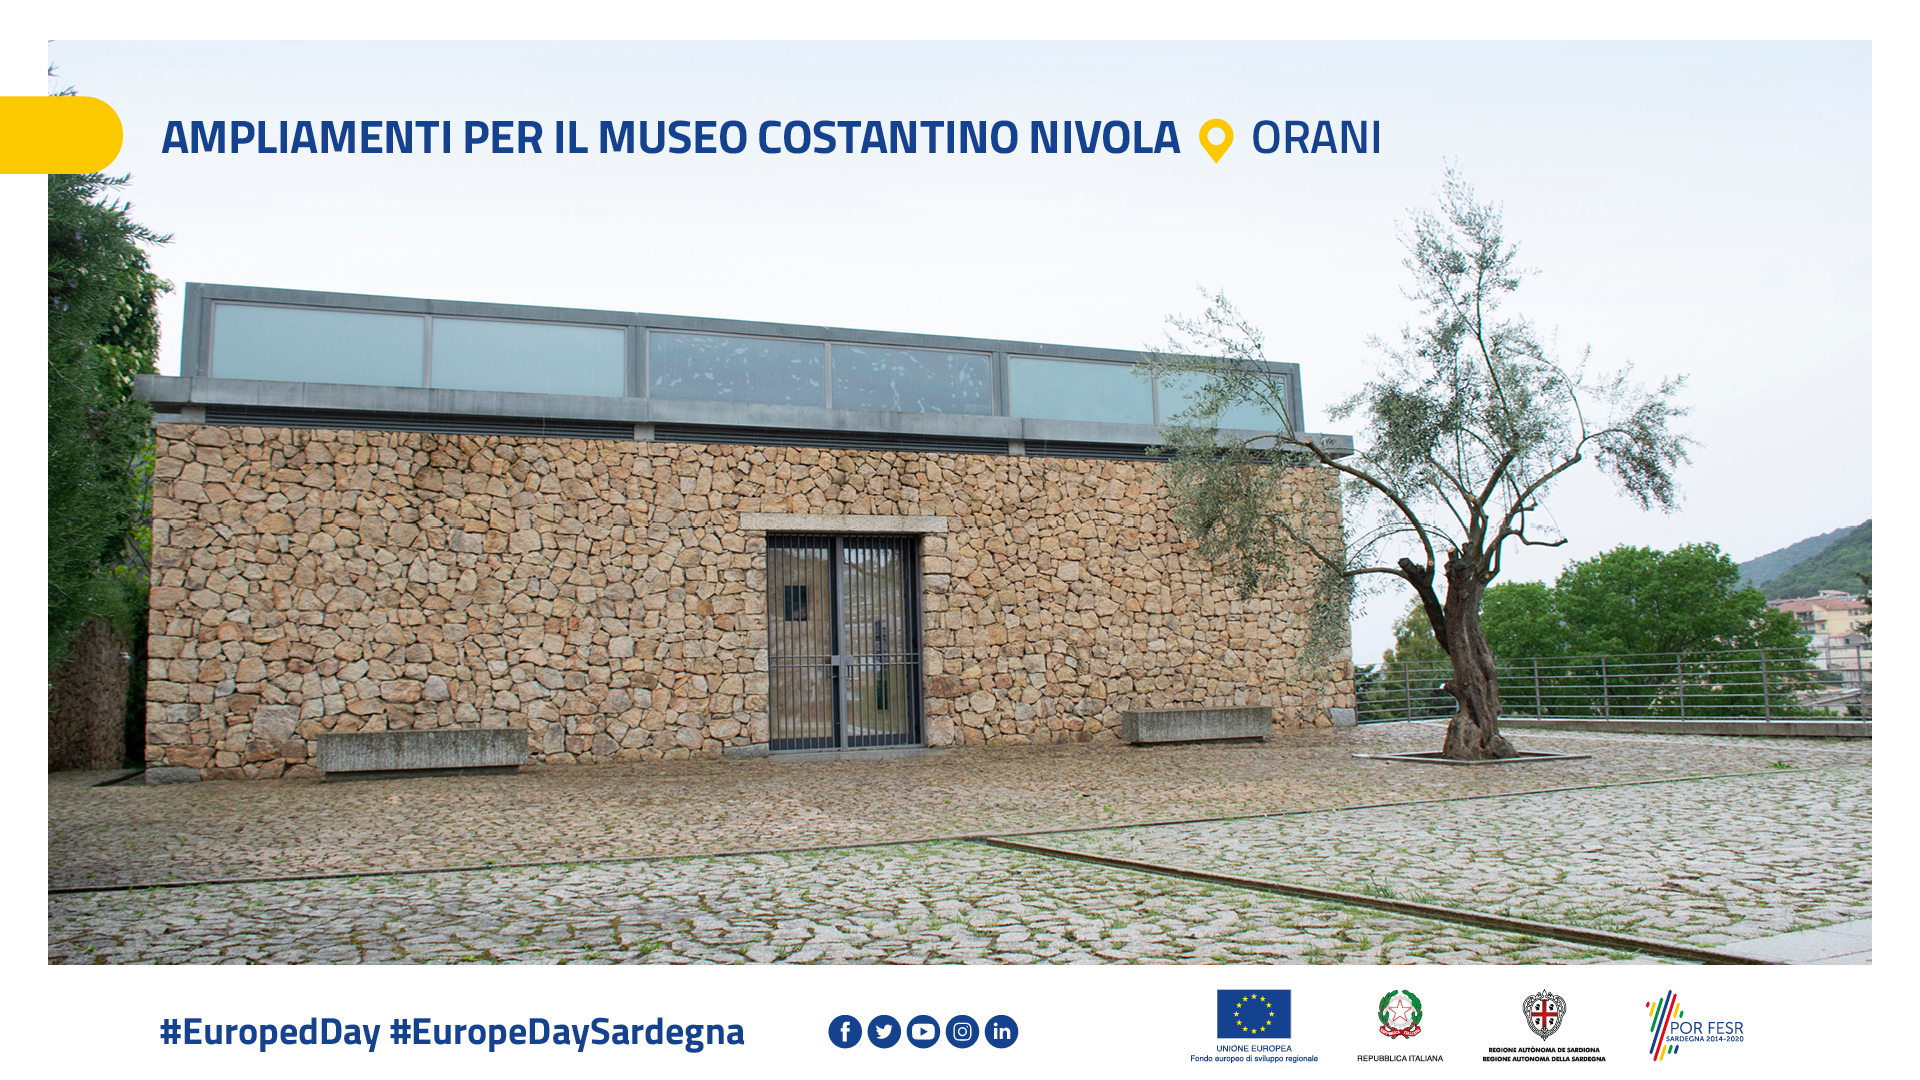 Ampliamenti per il Museo Costantinio Nivola – Orani